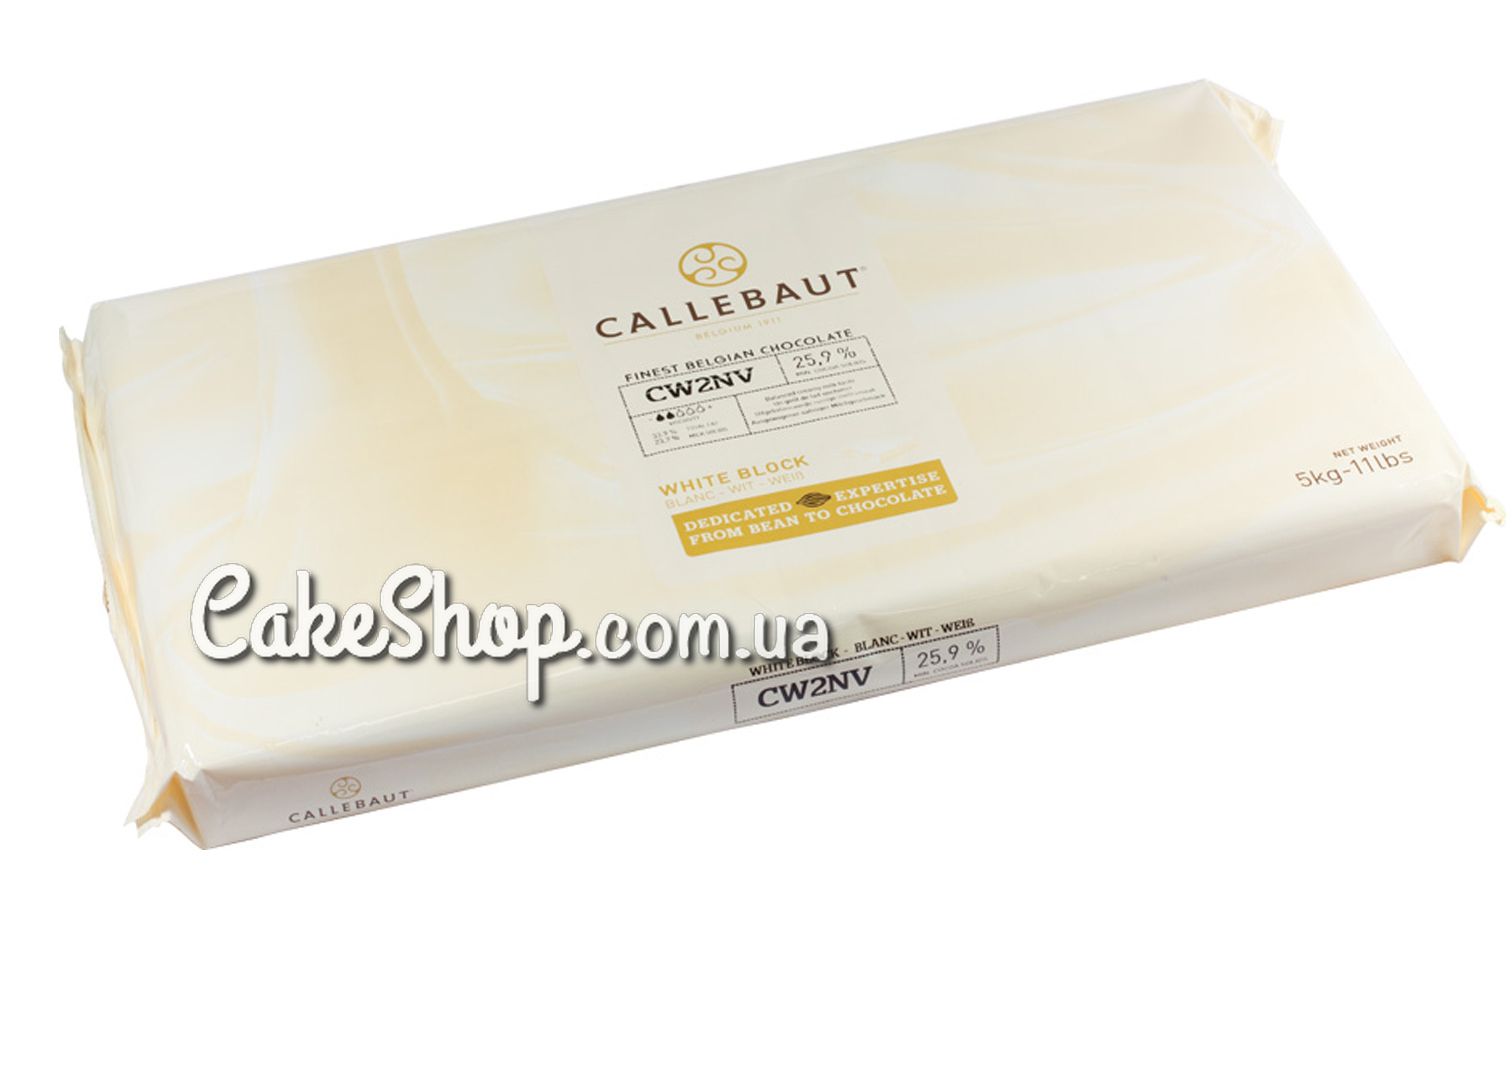 ⋗ Шоколад без сахара белый MALCHOC-W 25,9% Callebaut , 100 г купить в Украине ➛ CakeShop.com.ua, фото